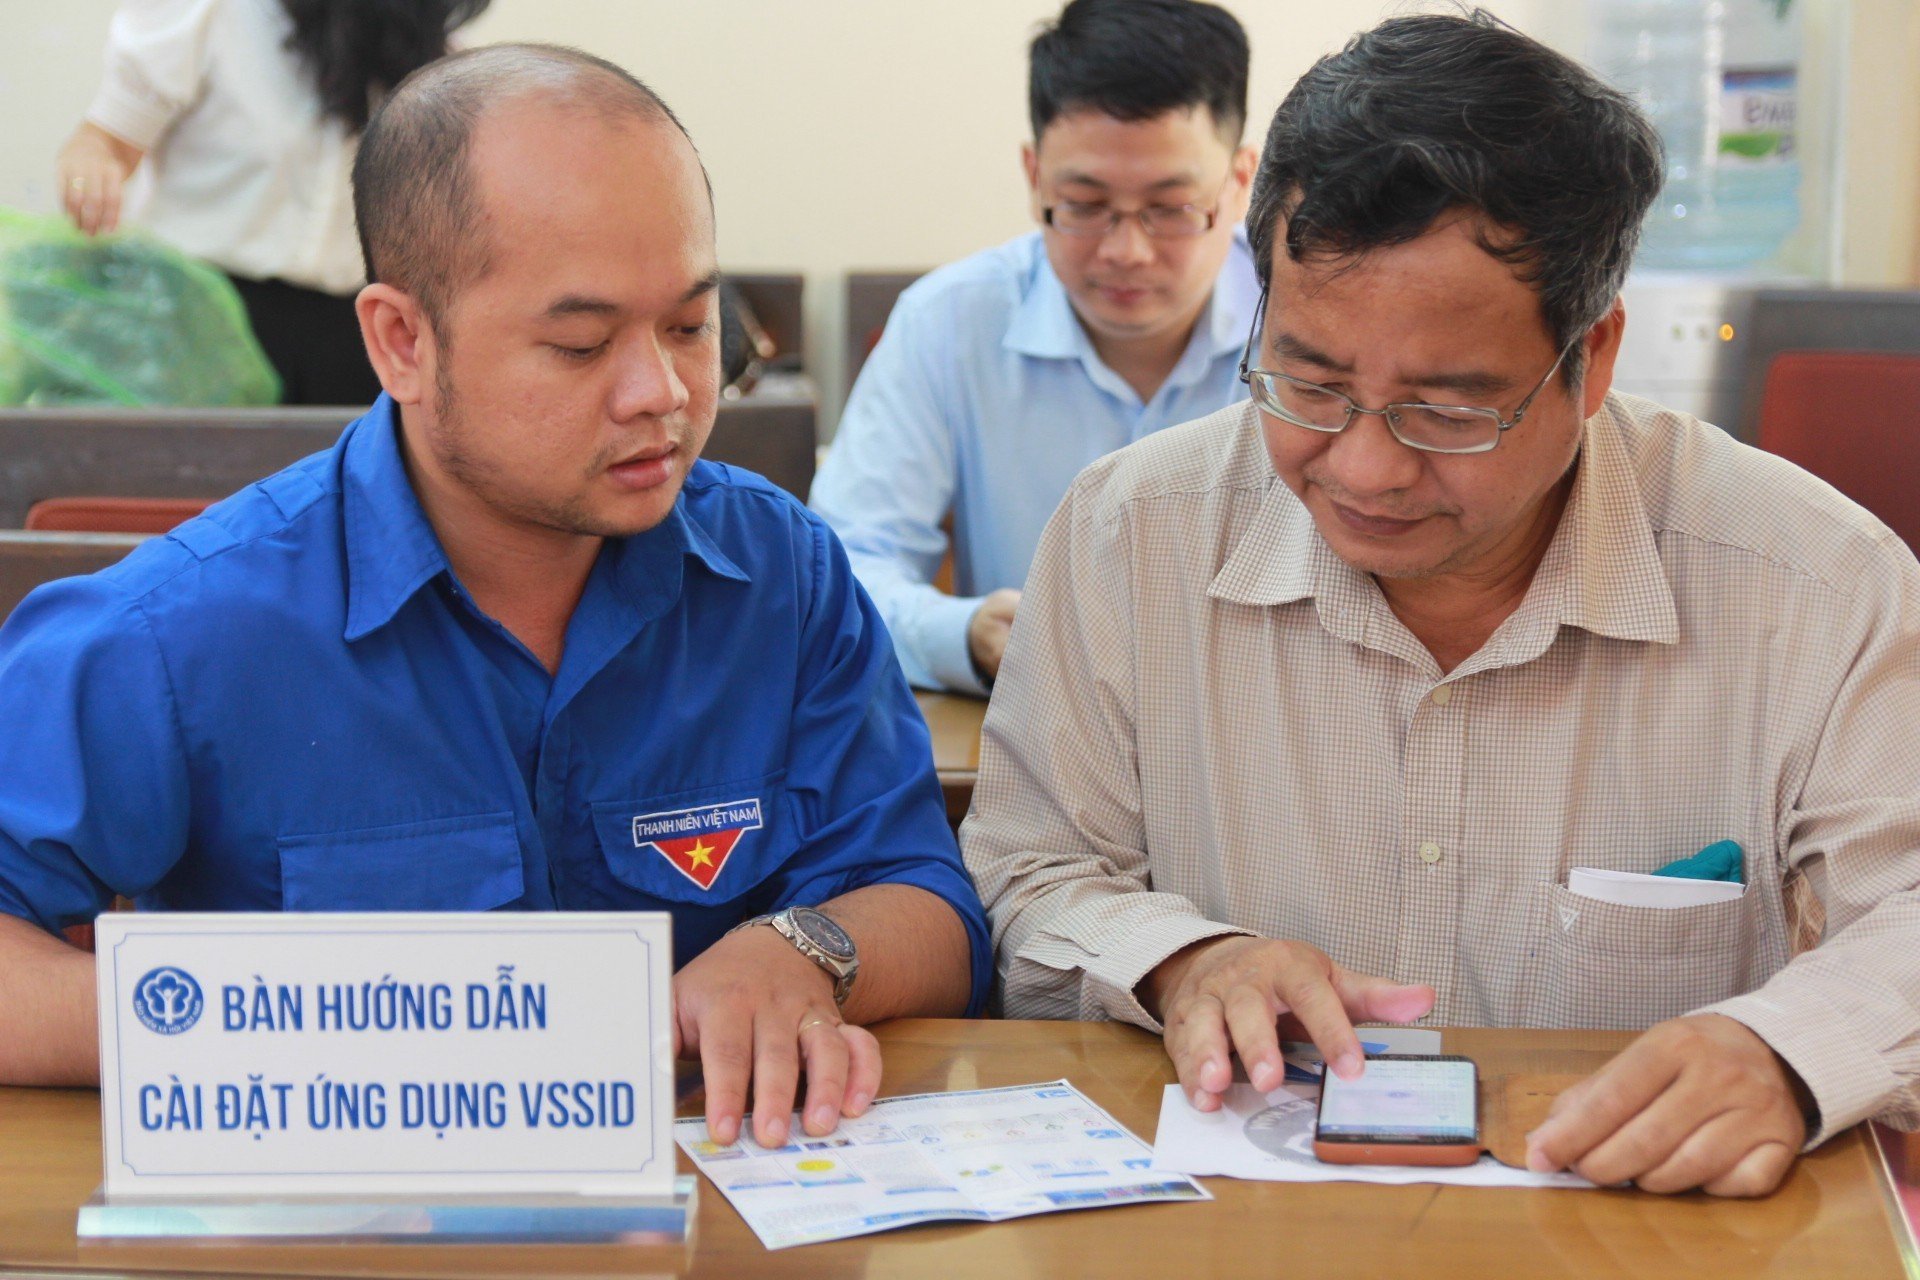 Viên chức BHXH TP. Hồ Chí Minh hướng dẫn người dân cài đặt ứng dụng VSSID